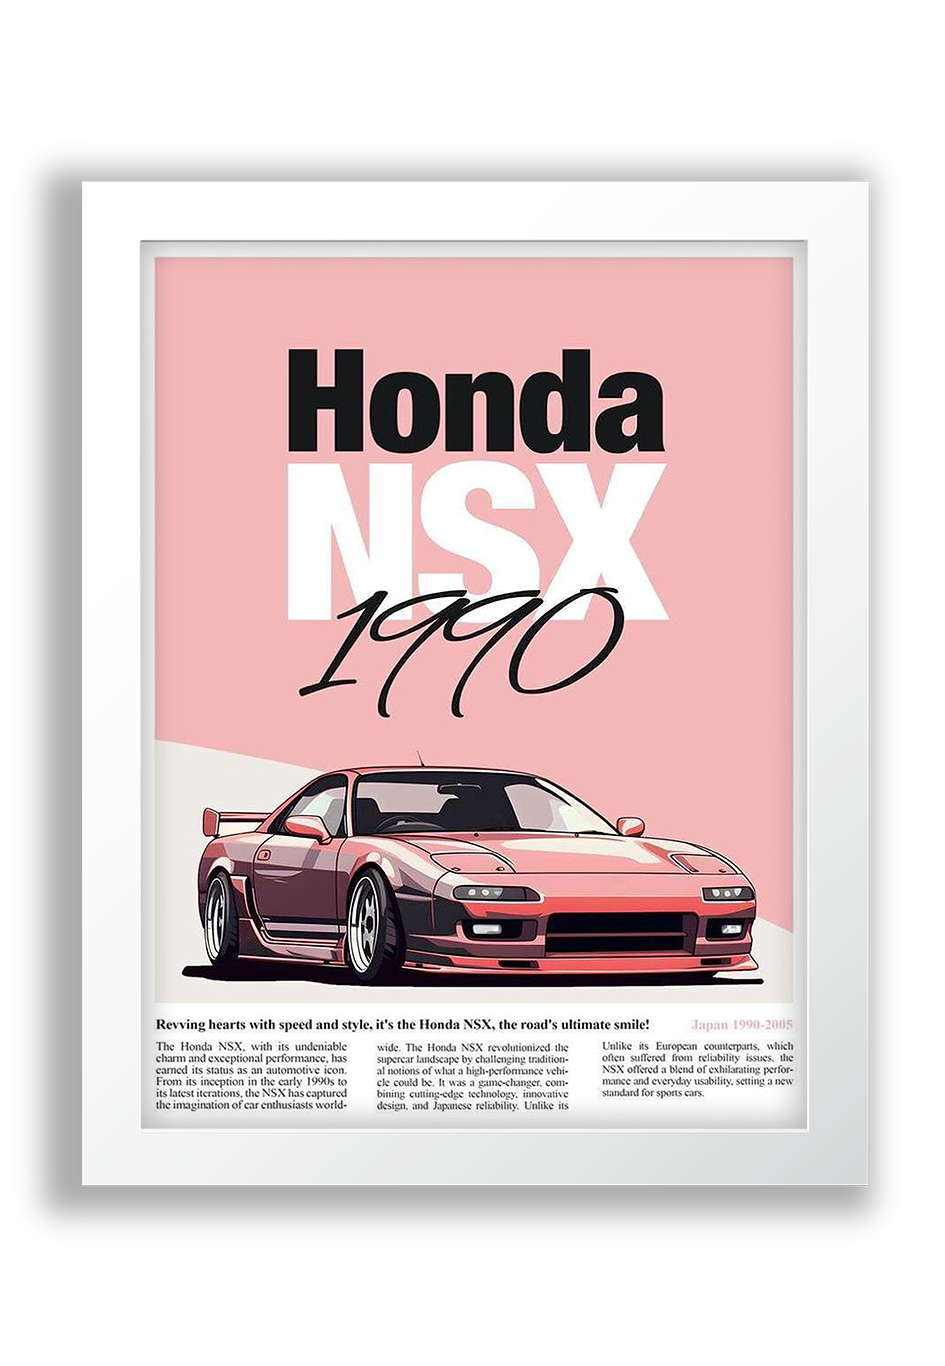 Honda - NSX 1990